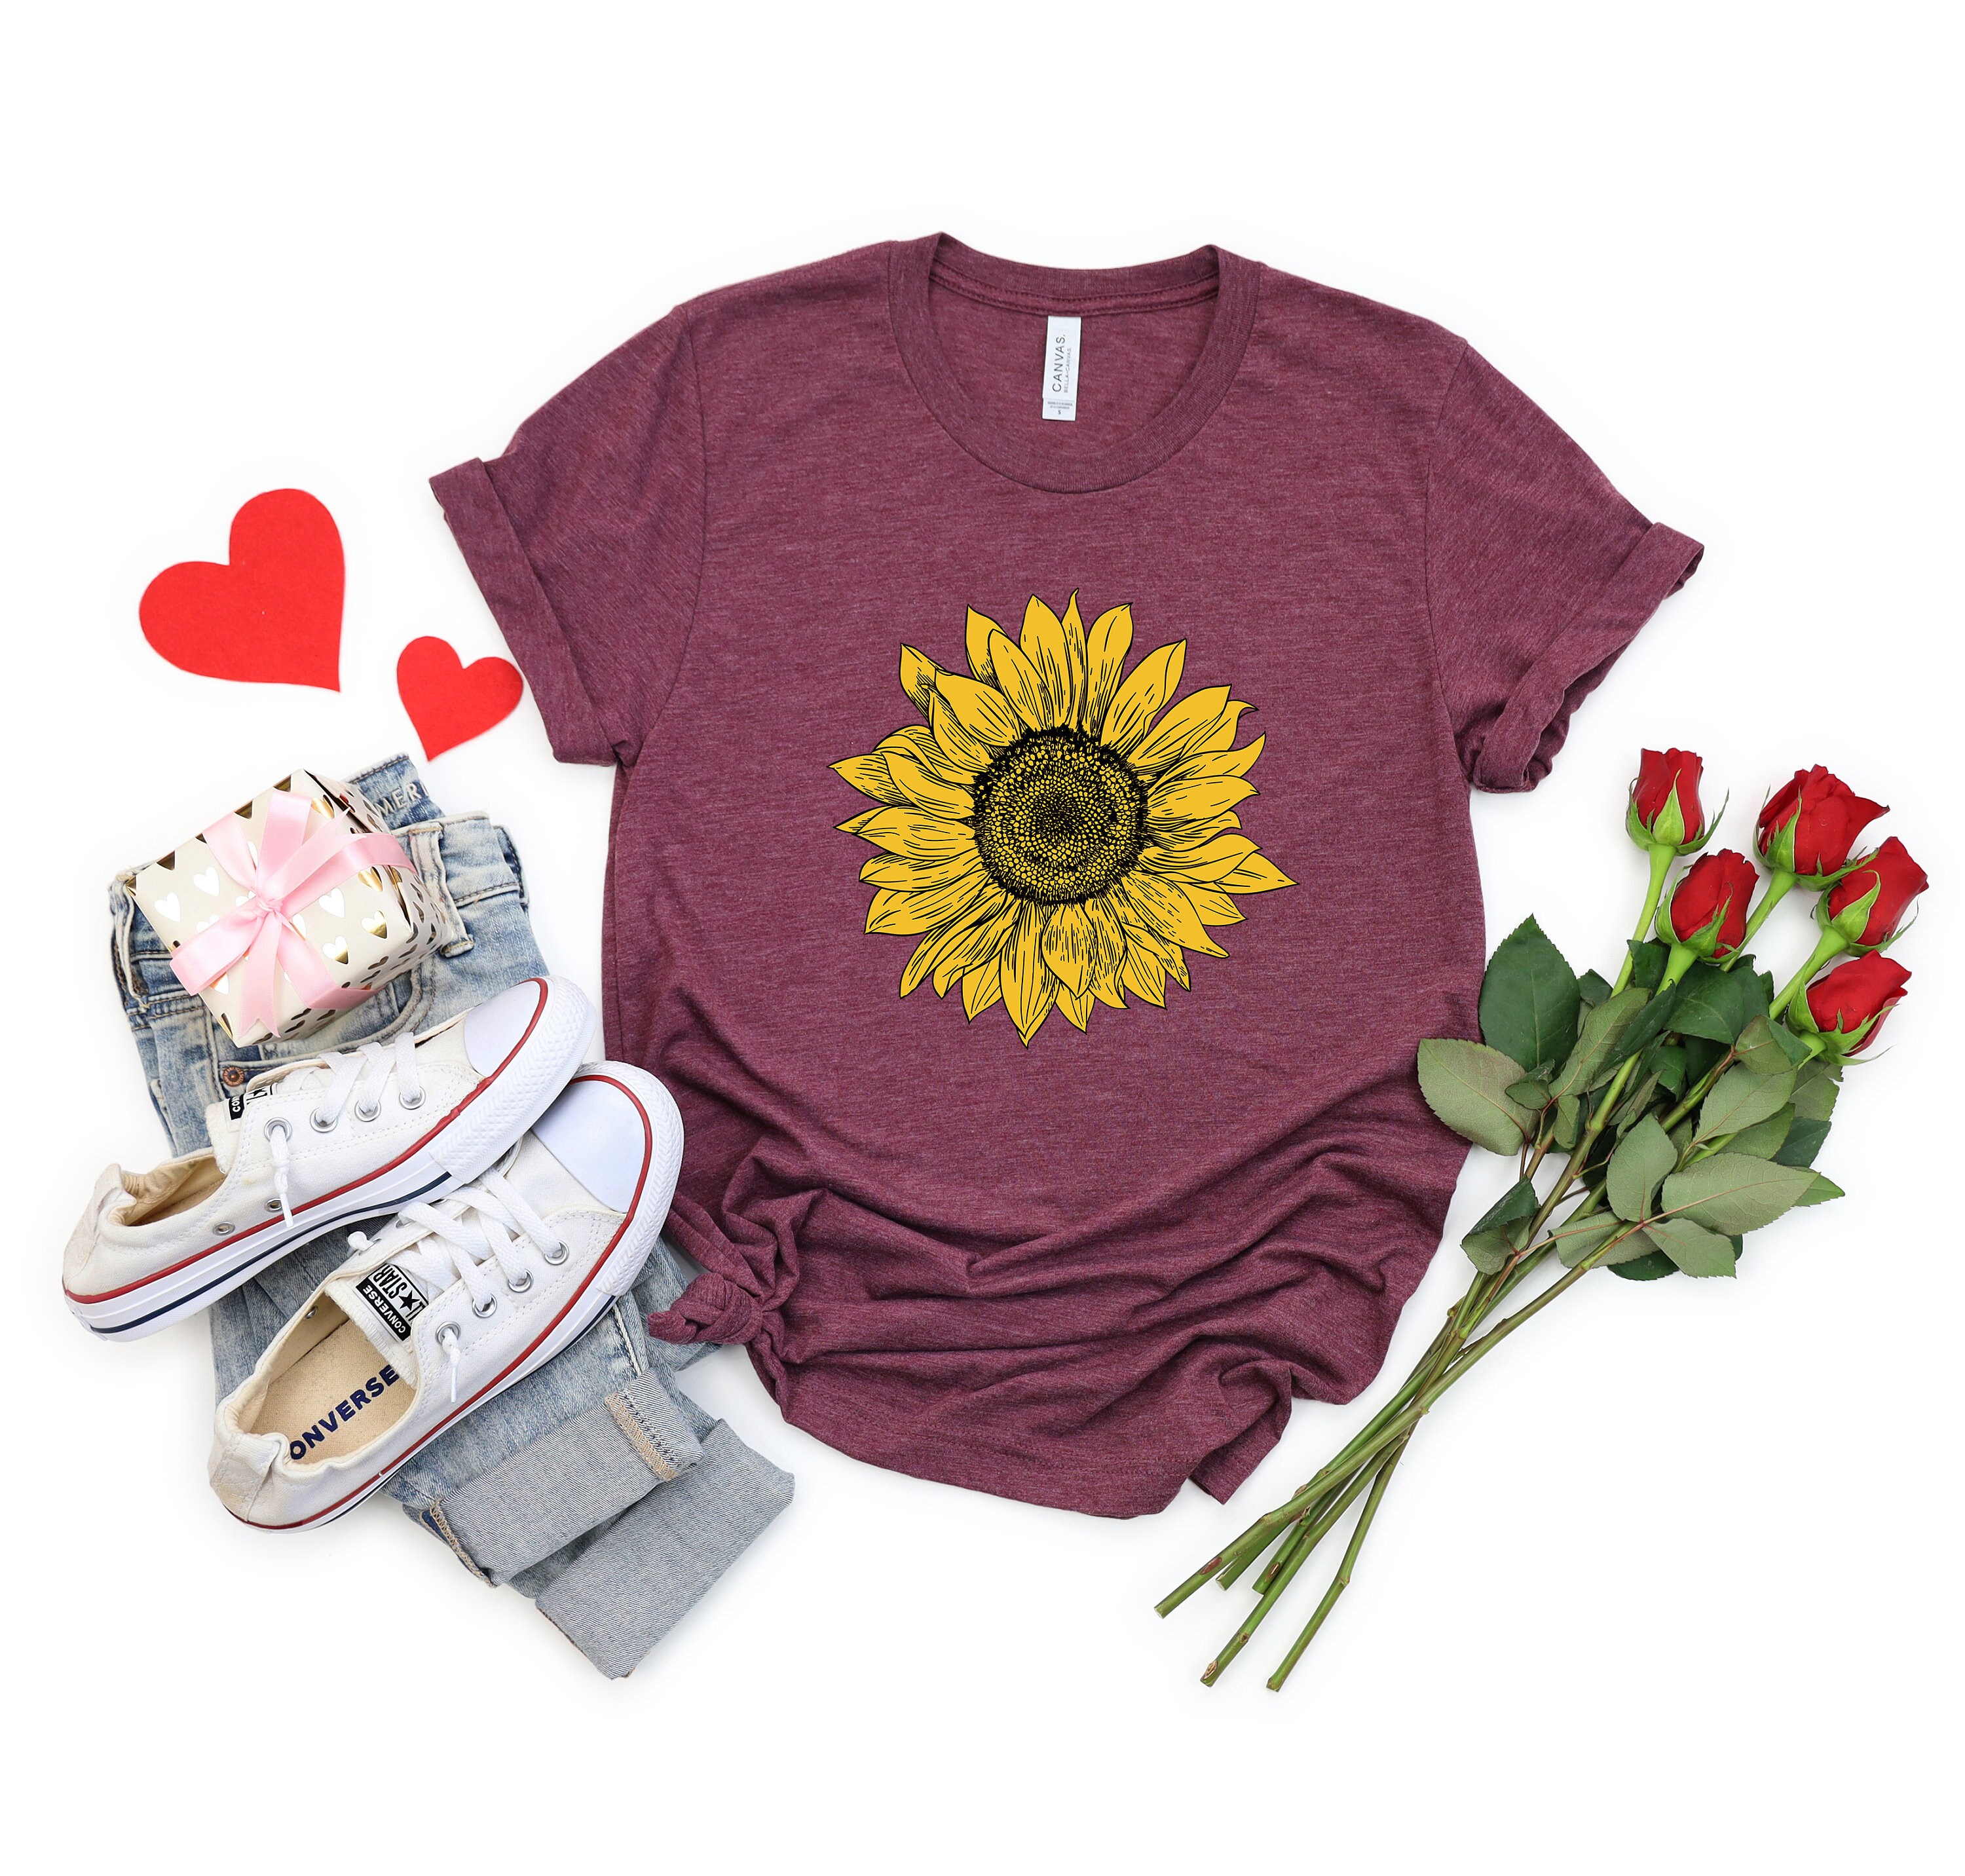 Sunflower Shirt, Spring Shirt, Summer Shirt, Women’s Shirt, Boho Shirt,Floral Tee Shirt, Flower Shirt, Garden Shirt,Sunflower Graphic Tee,